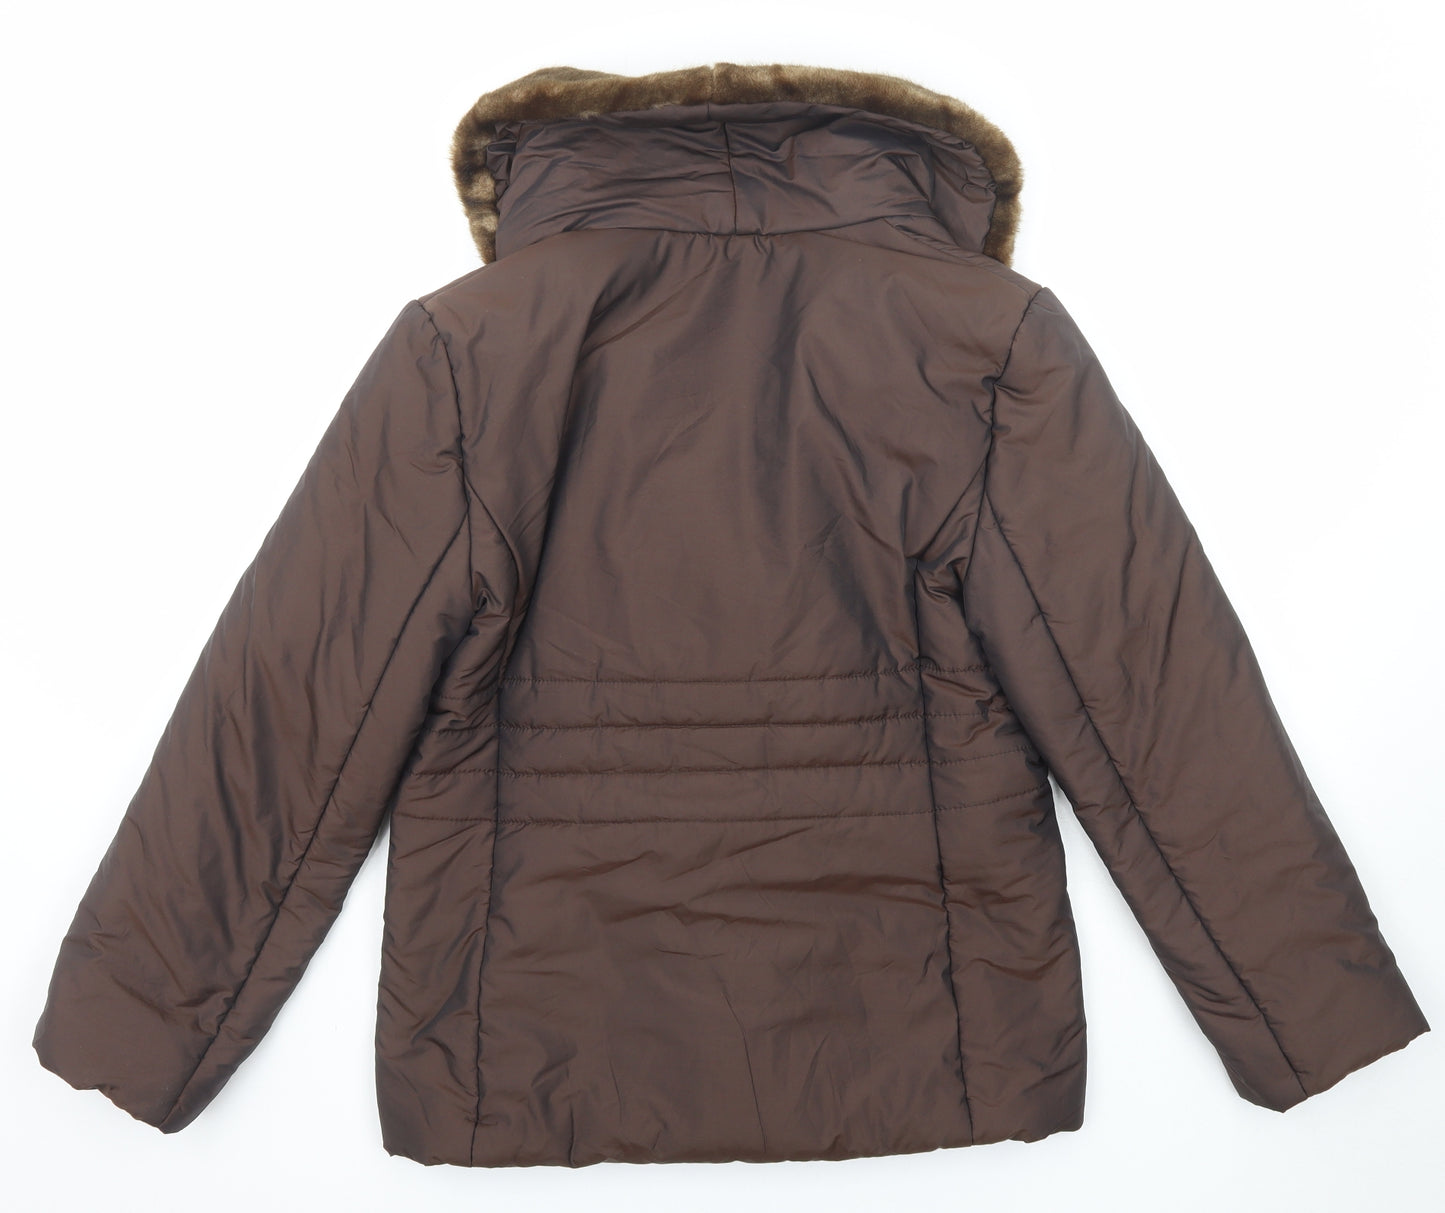 Alexon Womens Brown Jacket Size 10 Zip